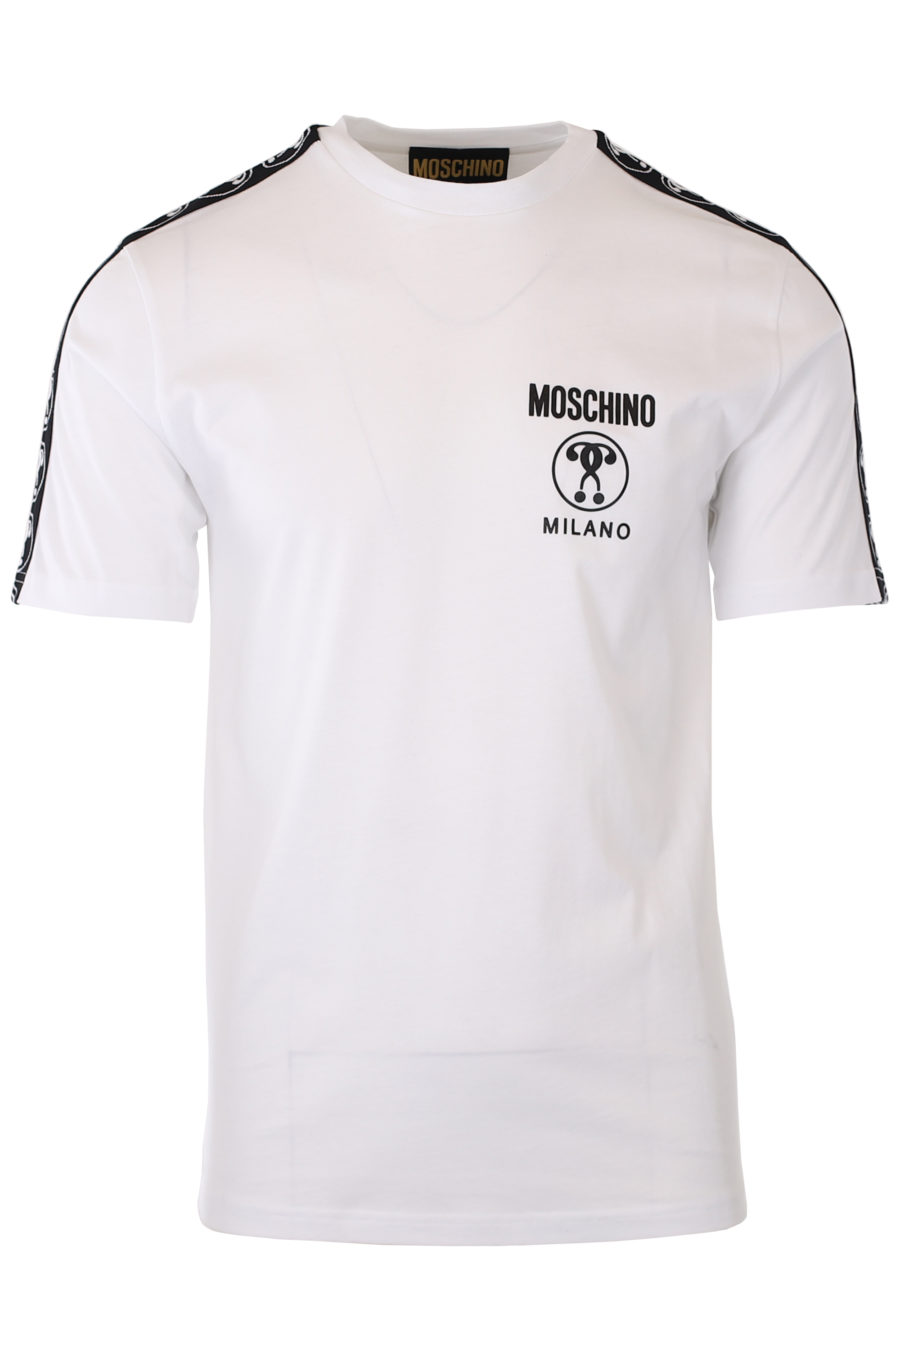 T-shirt blanc avec petit logo à double question et ruban adhésif sur les manches - IMG 9326